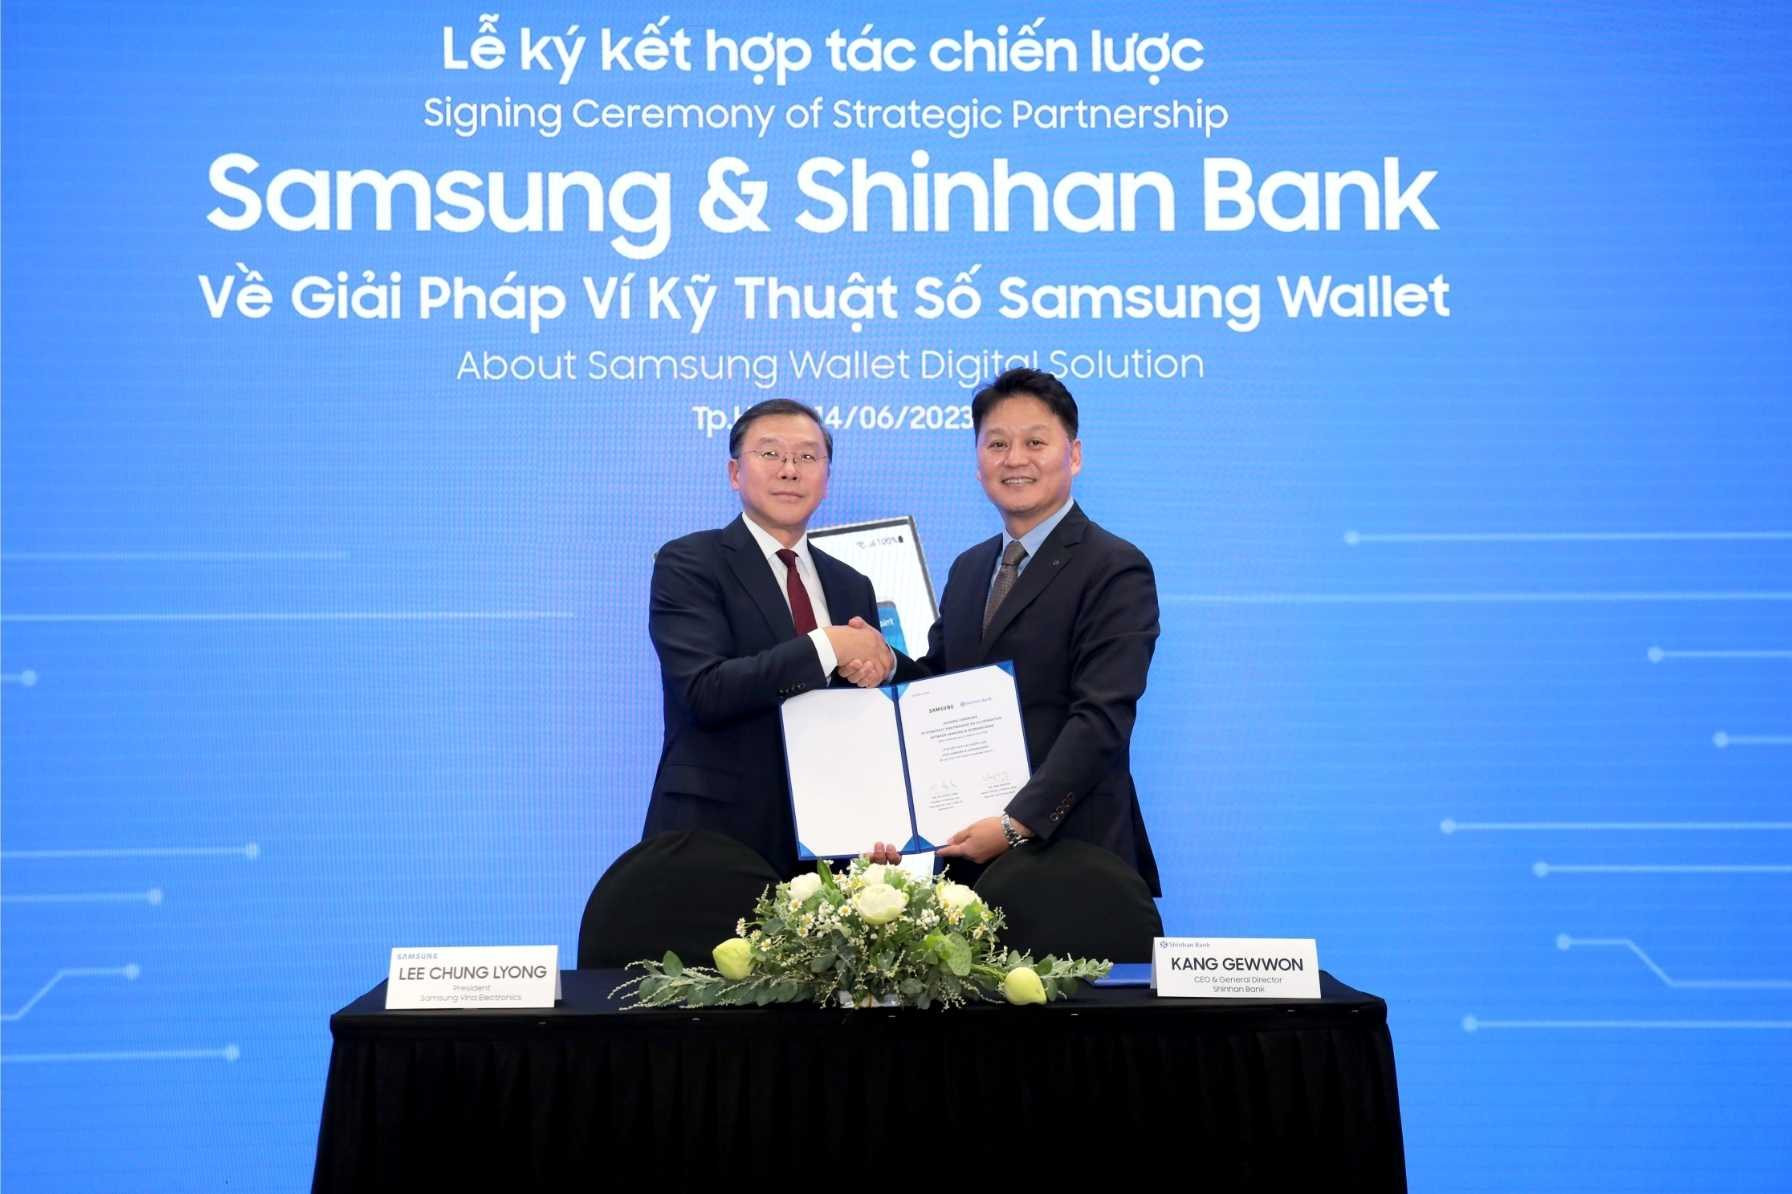 Samsung 'bắt tay' Shinhan Bank, mang đến nhiều quyền lợi cho người dùng Việt - Ảnh 2.